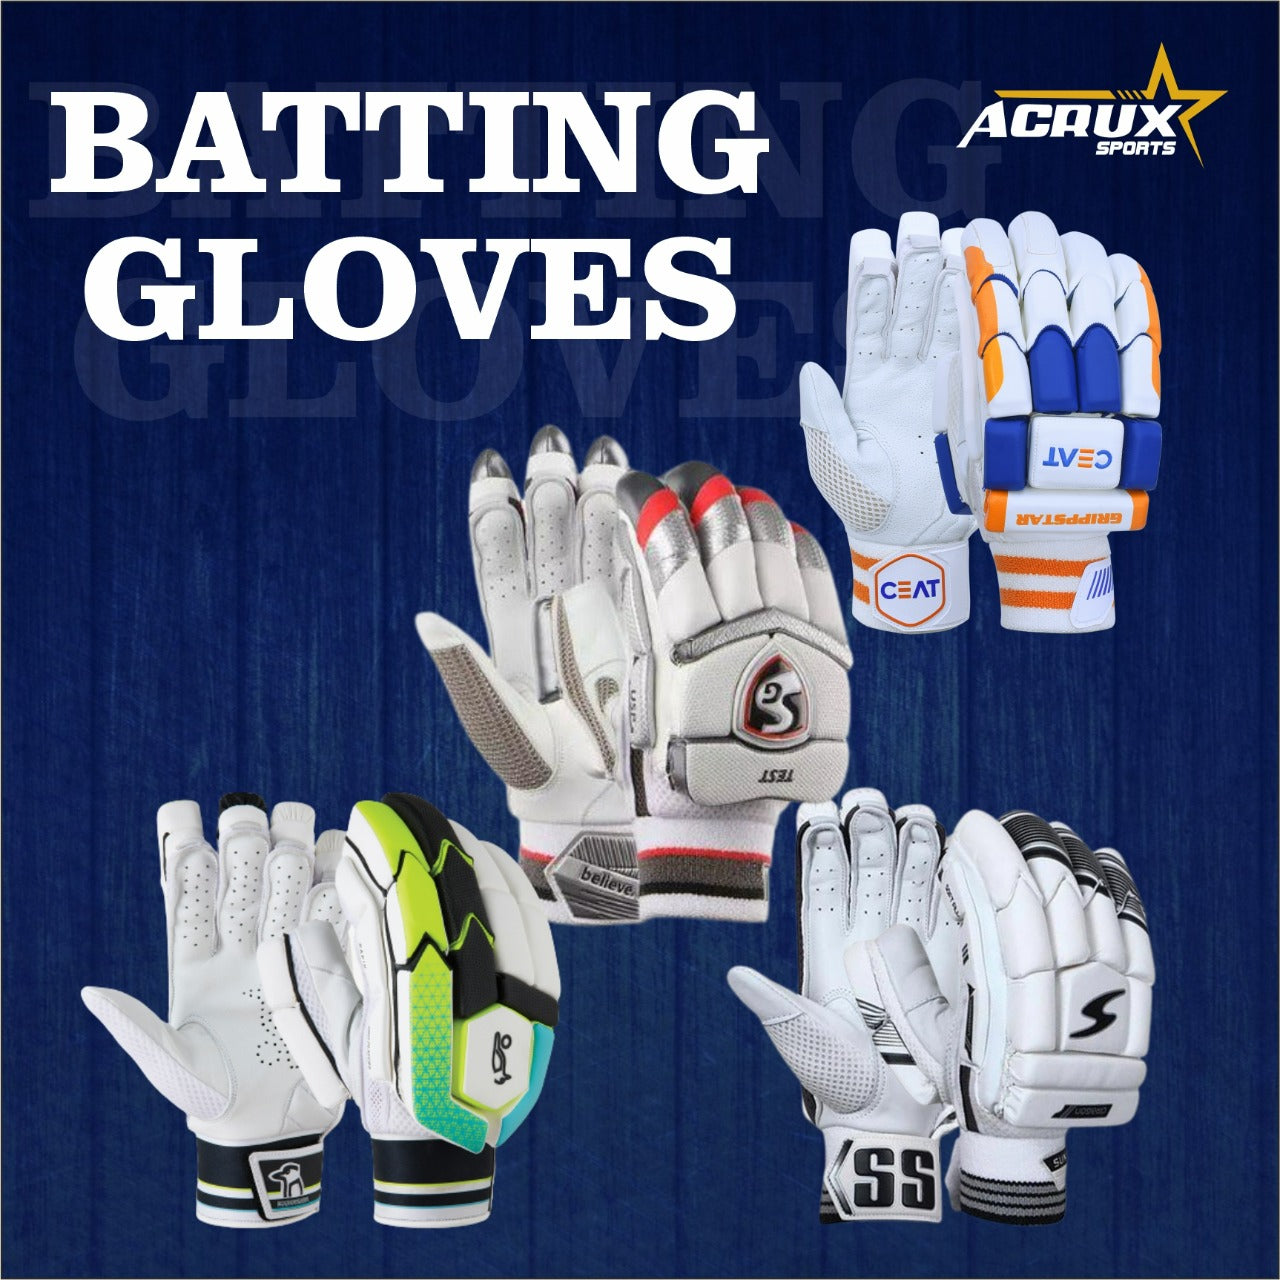 All Batting Gloves